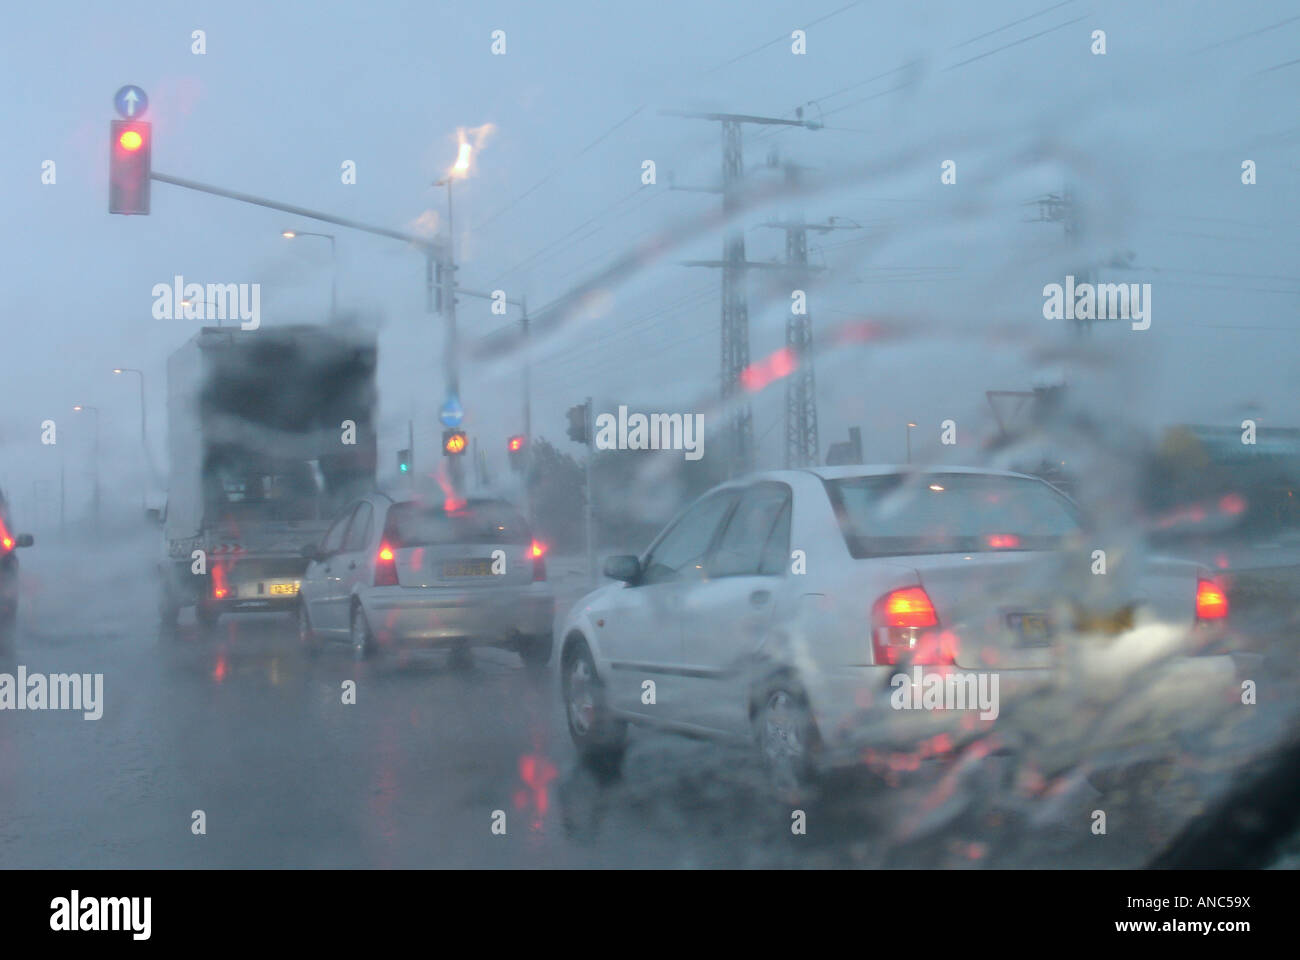 Autospiegel, regnet, Regen, Tropfen, nass, Transportmittel